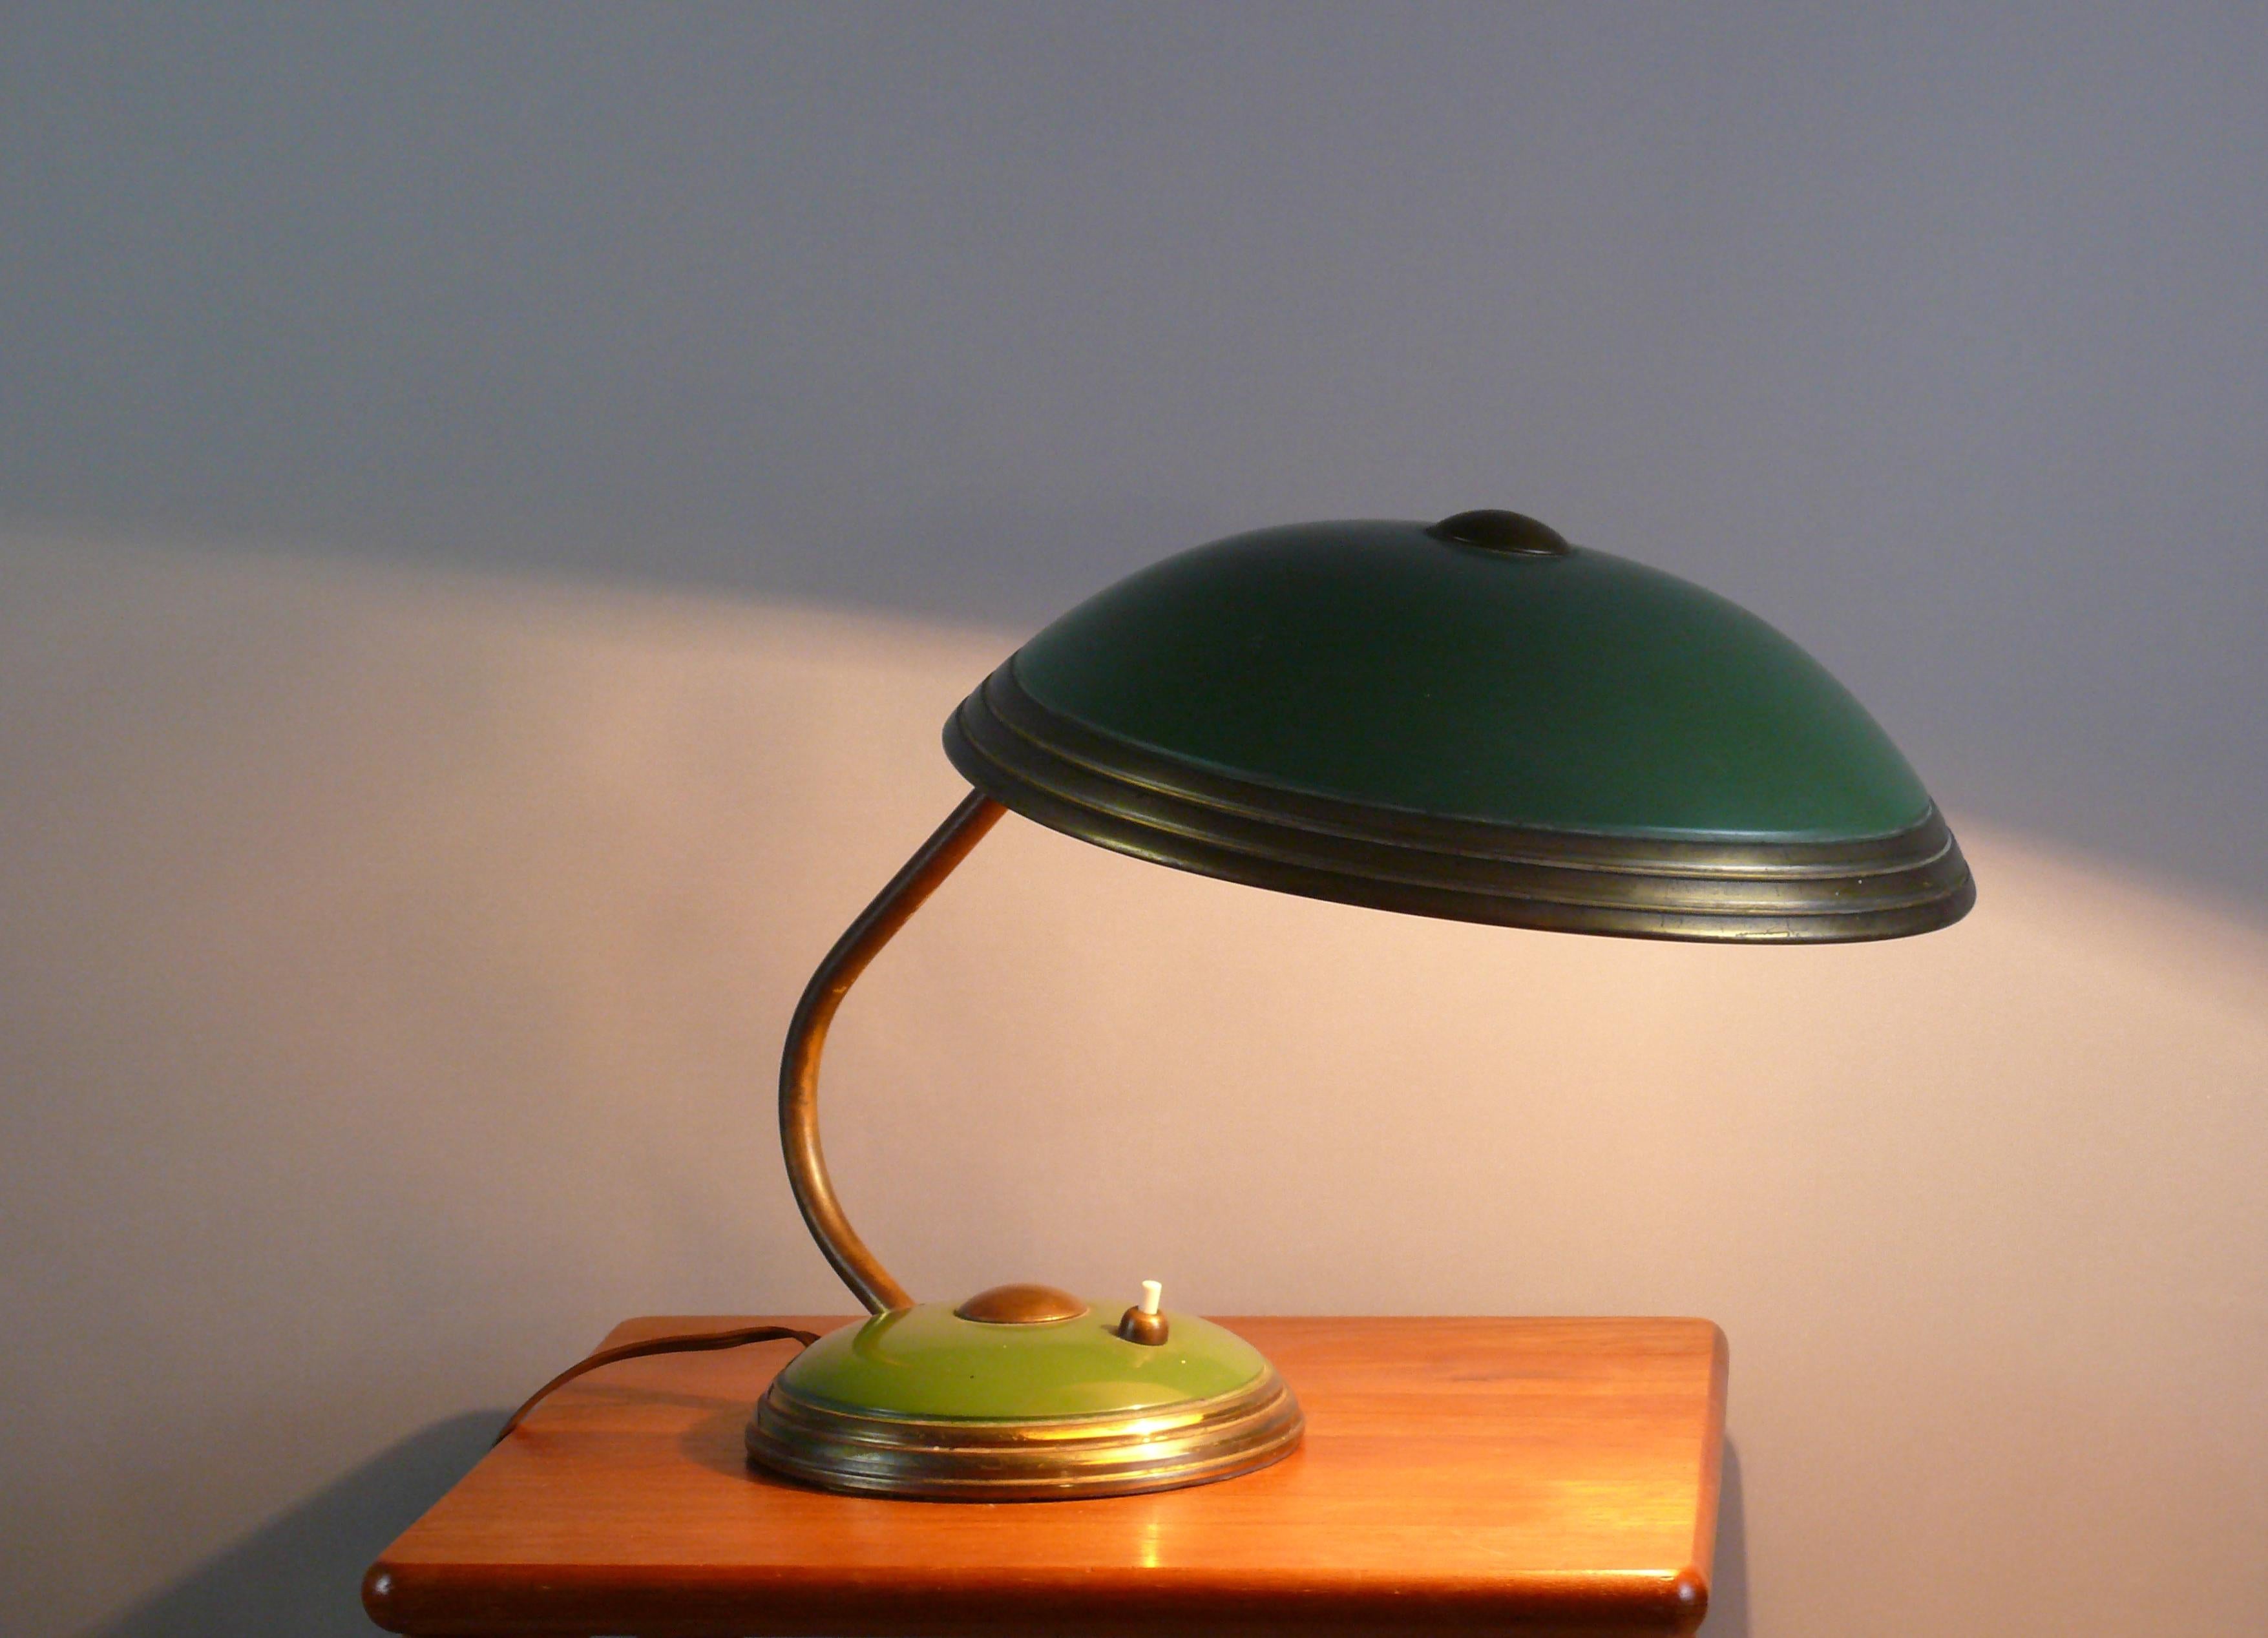 Helo-Tischleuchte im originalen, unpolierten Zustand, ein zeitloser Klassiker aus den 1950er Jahren. Stilistisch lehnt sich das Design der Leuchte an die Bauhaus-Zeit an. Der Lampenschirm lässt sich mit einem Kugelgelenk vielfältig verstellen. Die